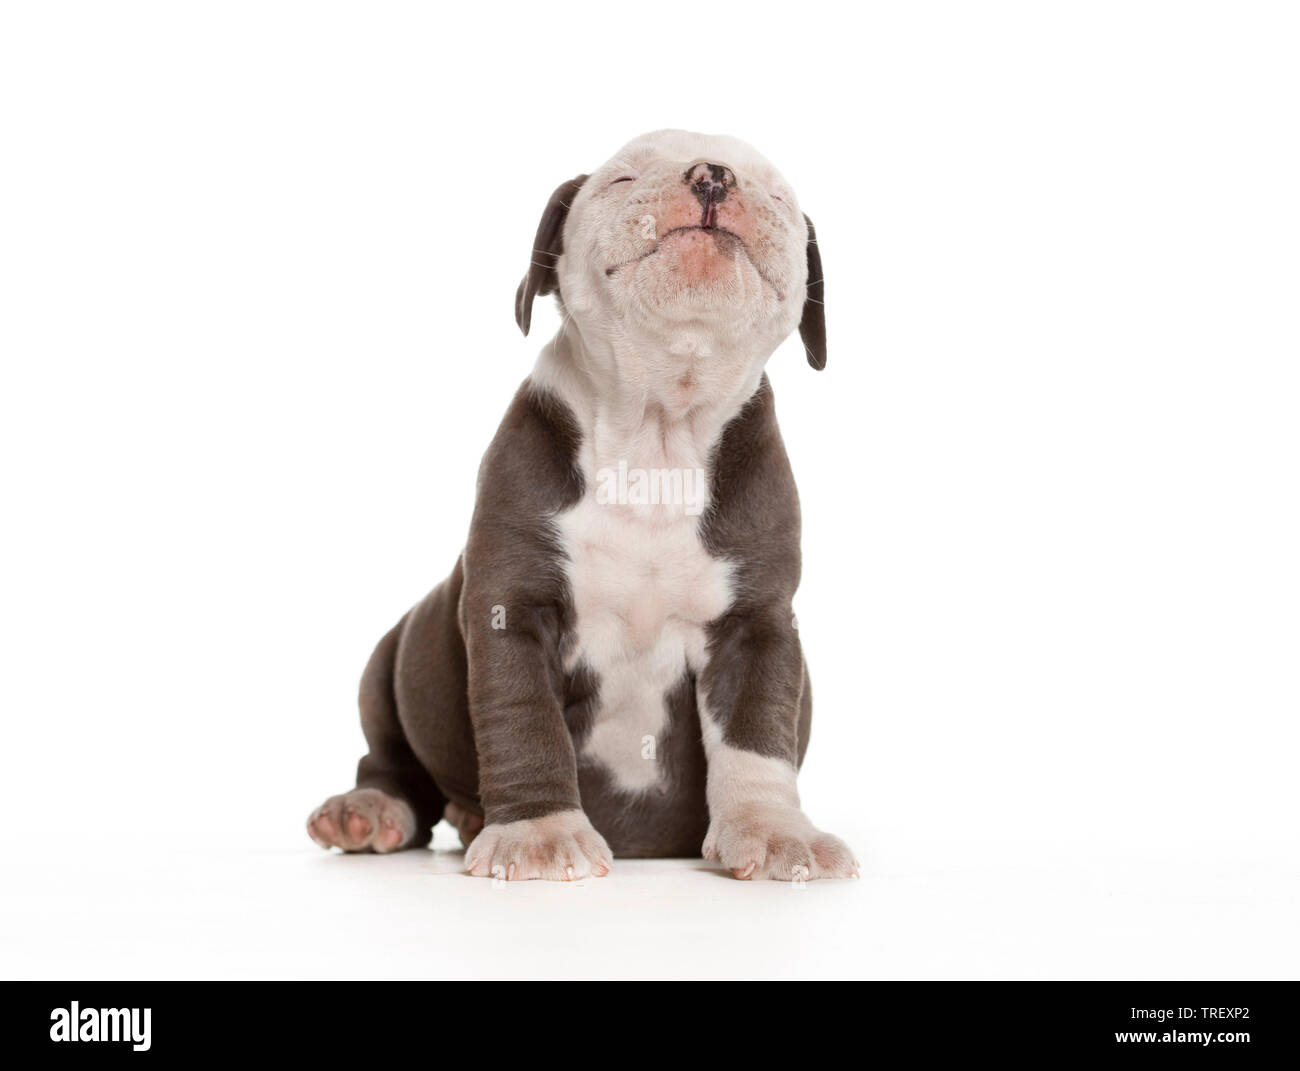 Bulldog anglais. Puppy sitting, isolé sur blanc. Allemagne Banque D'Images